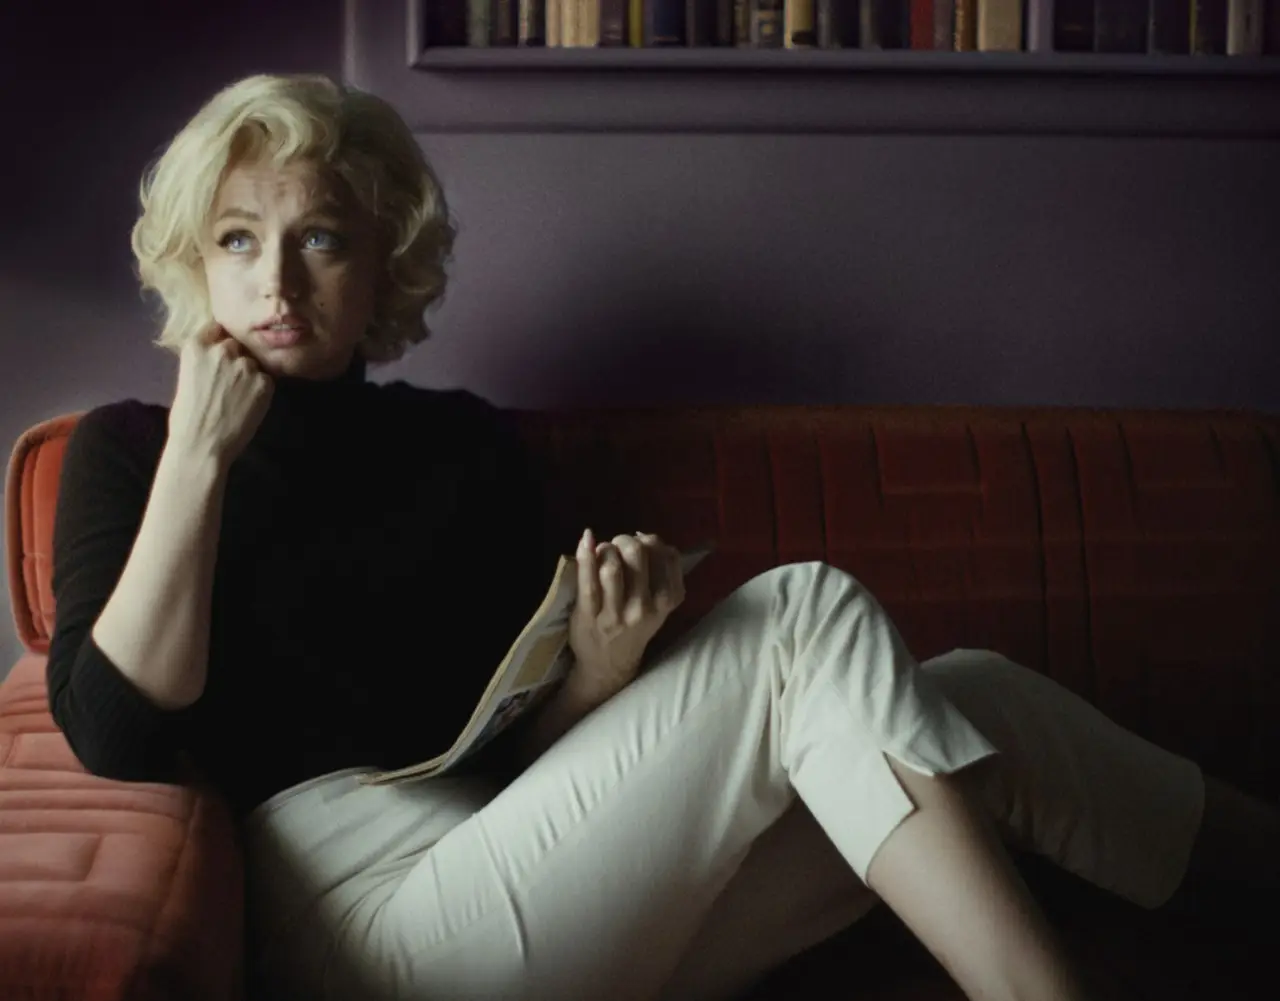 Ana de Armas capricha no ‘boneco’, falha na alma de Marilyn, em “Blonde”
